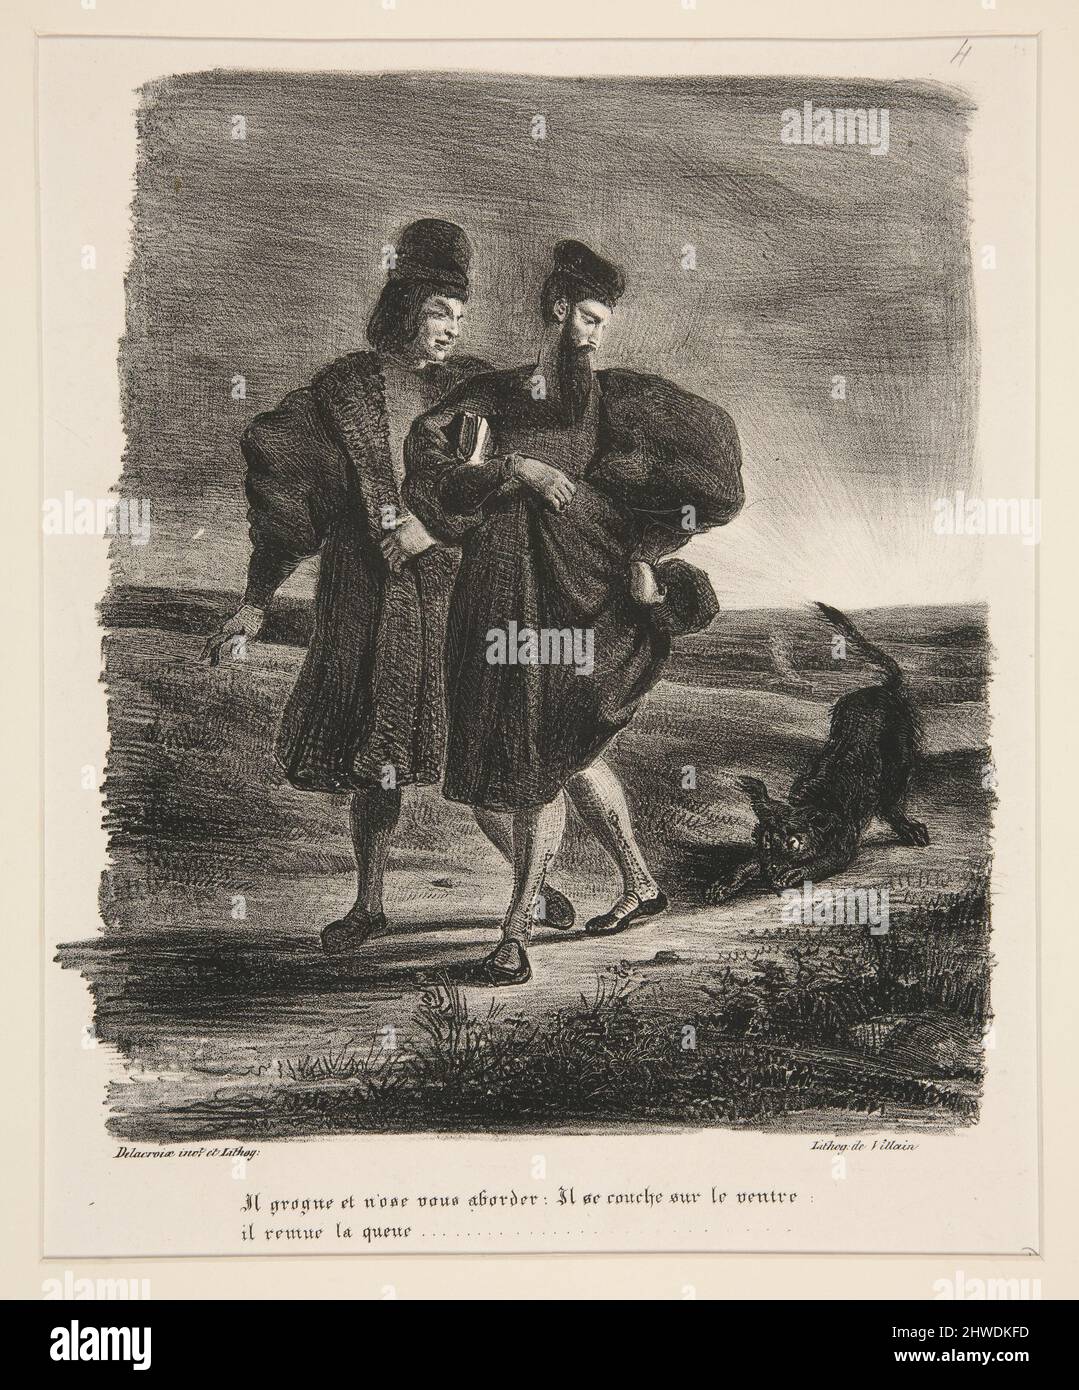 Faust, Méphistophélès et le barbet (Faust, Mephistopheles and the Water Spaniel).  Artist: Eugène Delacroix, French, 1798–1863 Stock Photo